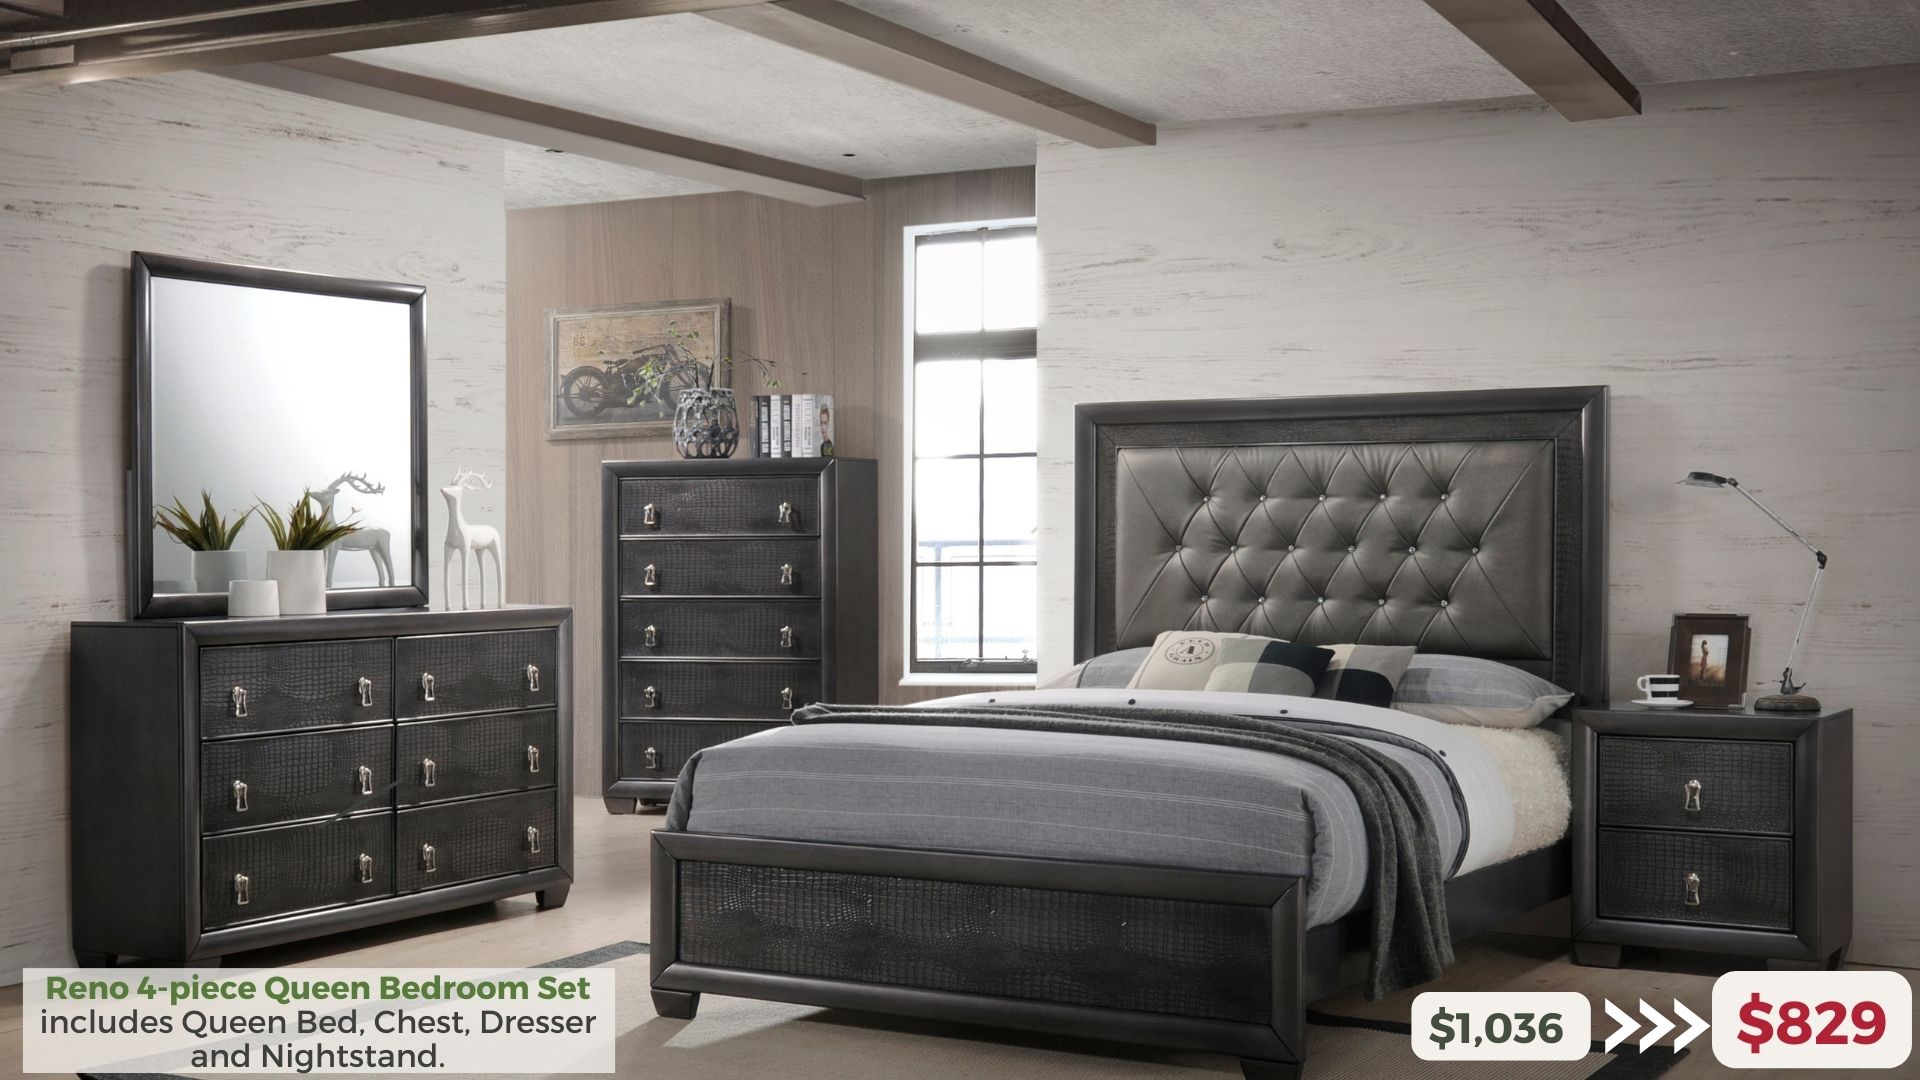 Reno 4-piece Queen Bedroom Set includes Queen Bed, Chedst, Dresser and Nightstand. $829